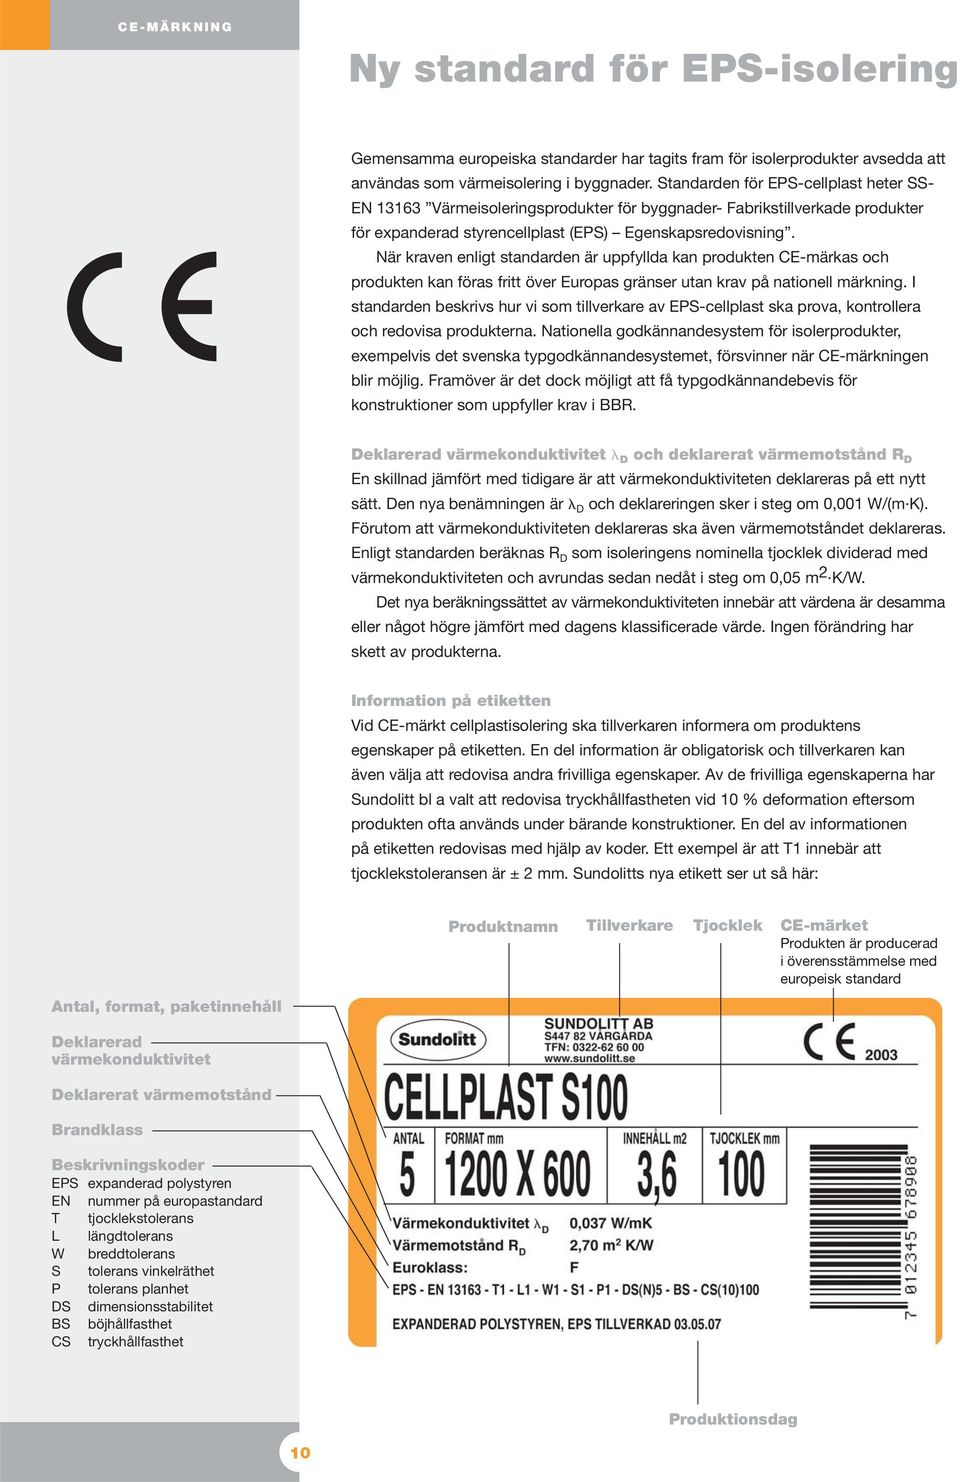 När kraven enligt standarden är uppfyllda kan produkten CE-märkas och produkten kan föras fritt över Europas gränser utan krav på nationell märkning.